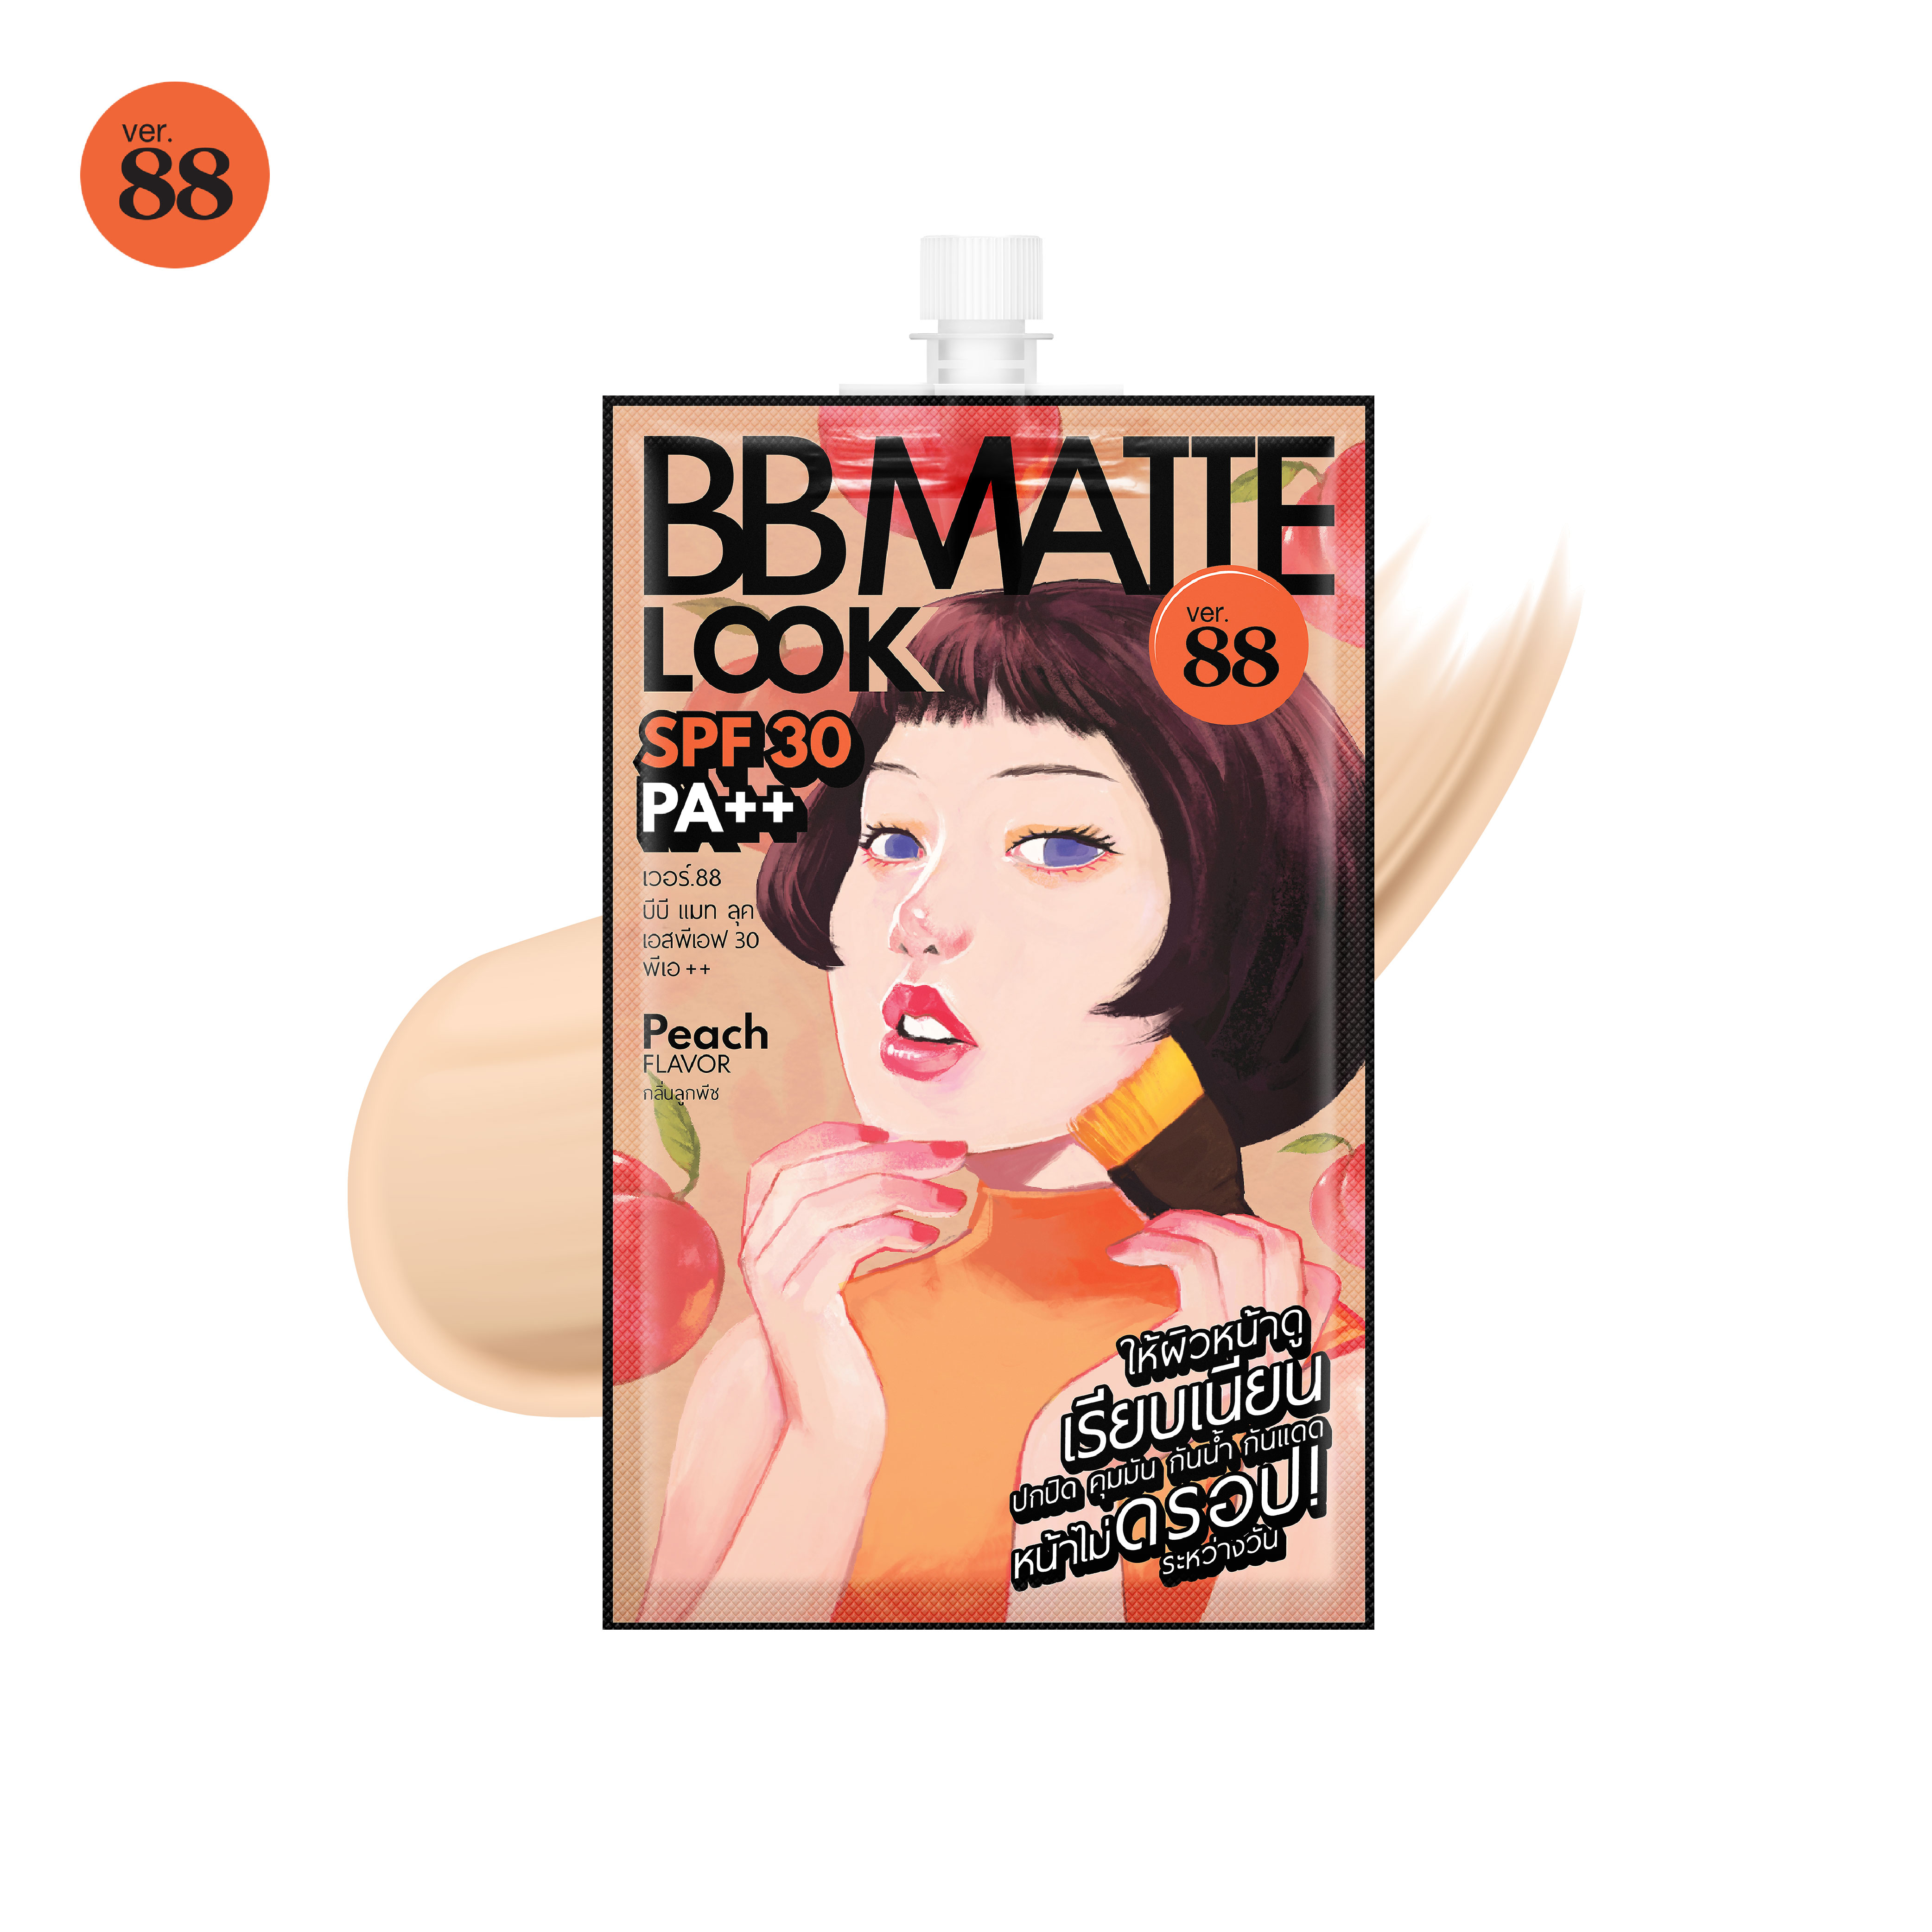 BB MATTE LOOK SPF30 PA++  (5 ml.) - บีบี แมท ลุค เอสพีเอฟ30 พีเอ++